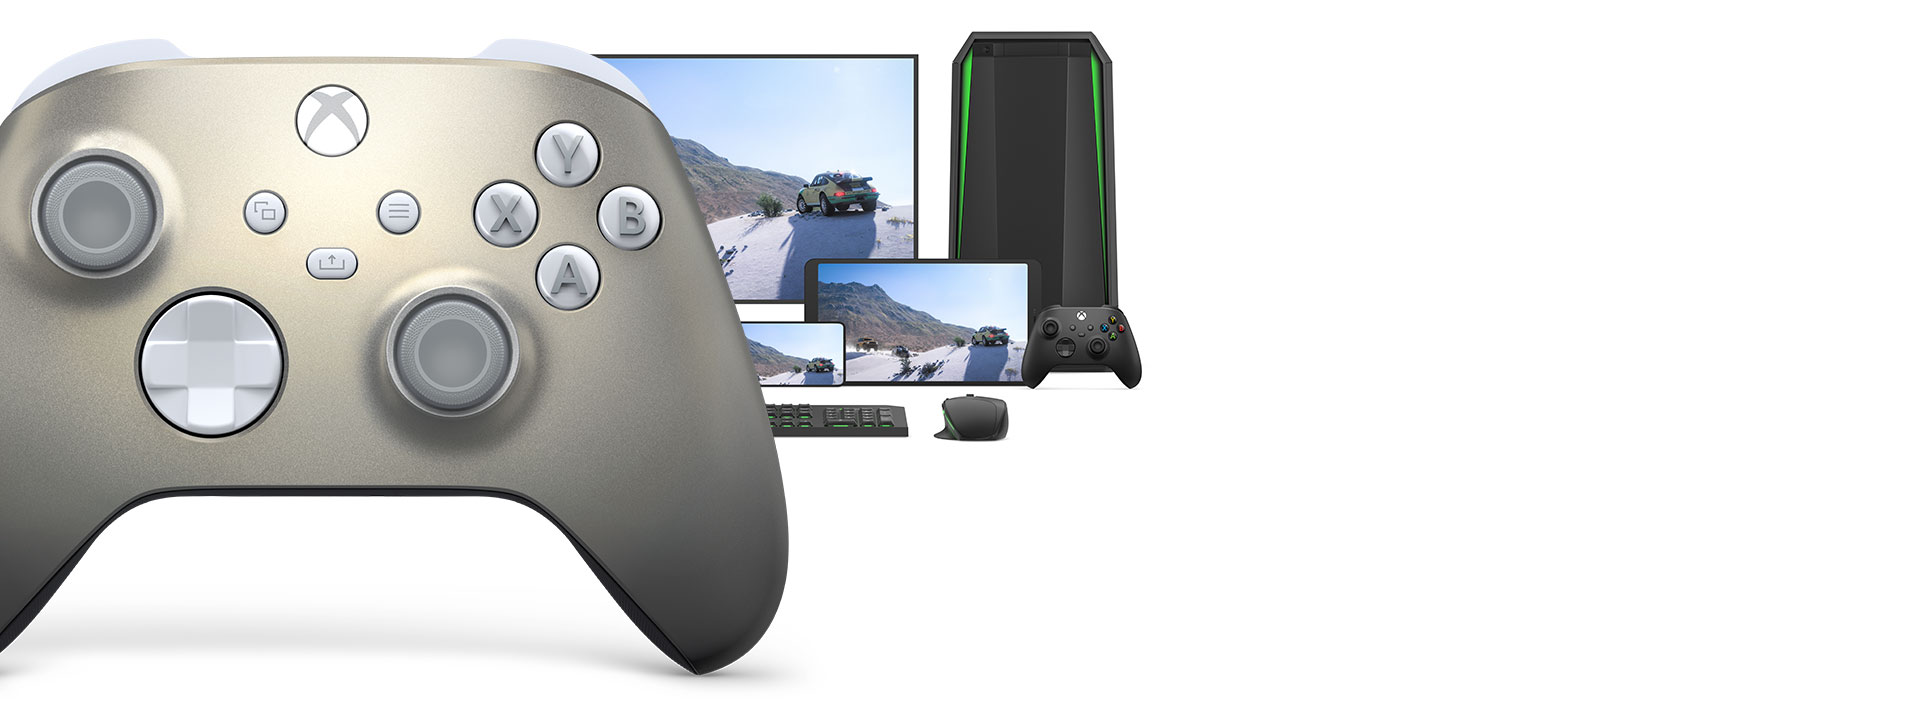 Trådløs Xbox-controller - Lunar Shift Special Edition med en computer, tv og en Xbox Series S